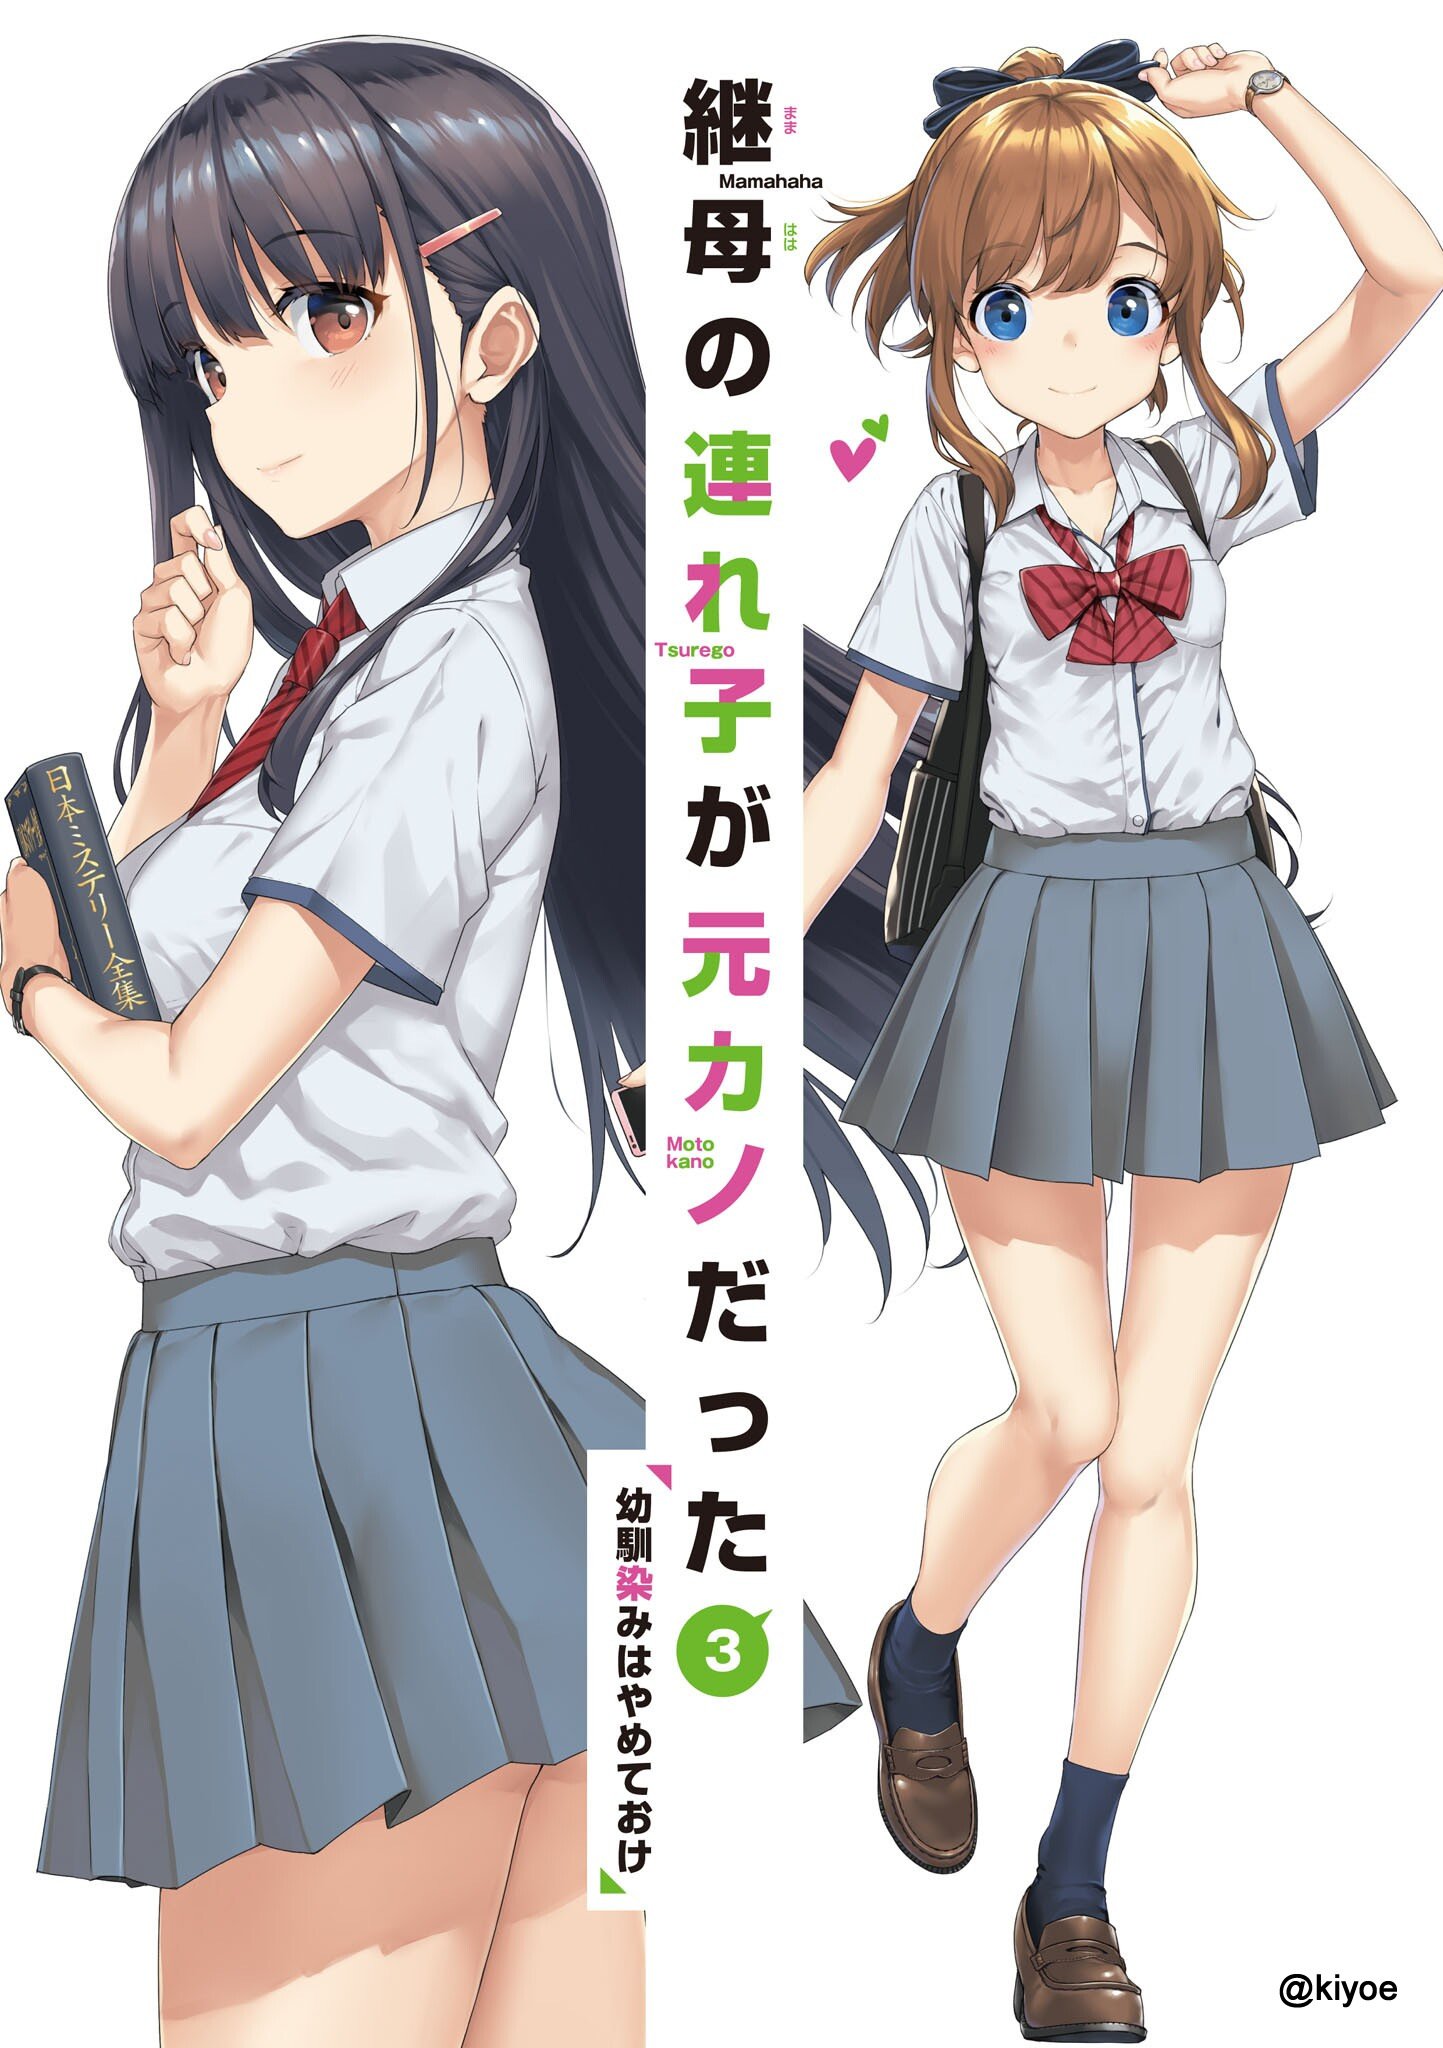 Volume 3 (Manga), Mamahaha no Tsurego ga Motokano Datta Wiki